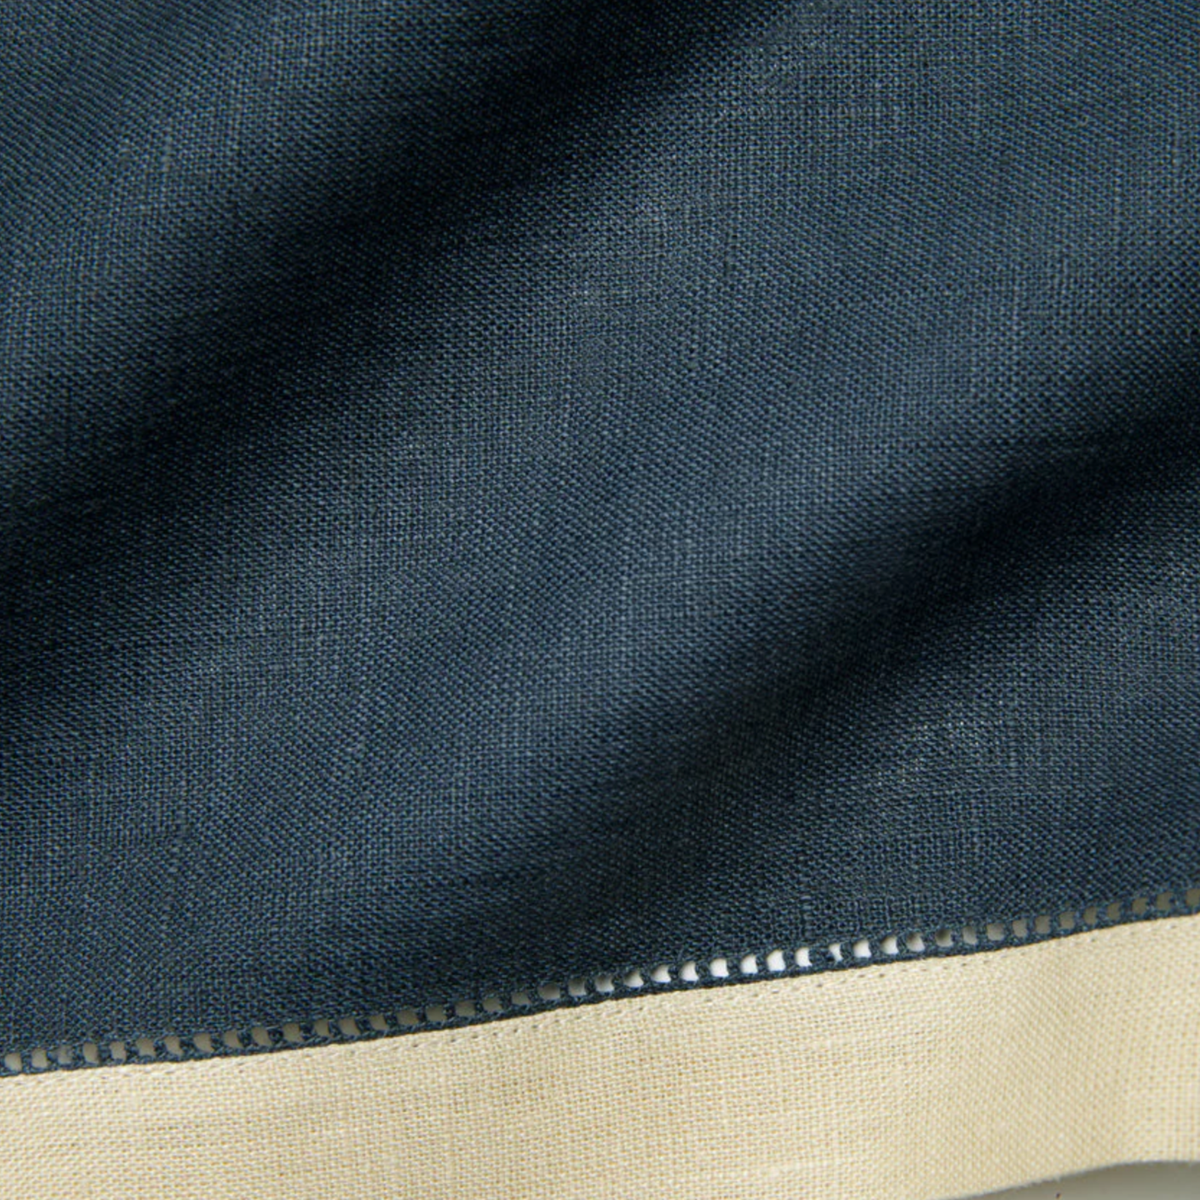 Closeup of Sferra Roma Napkin Fabric in Indigo and Stone Color